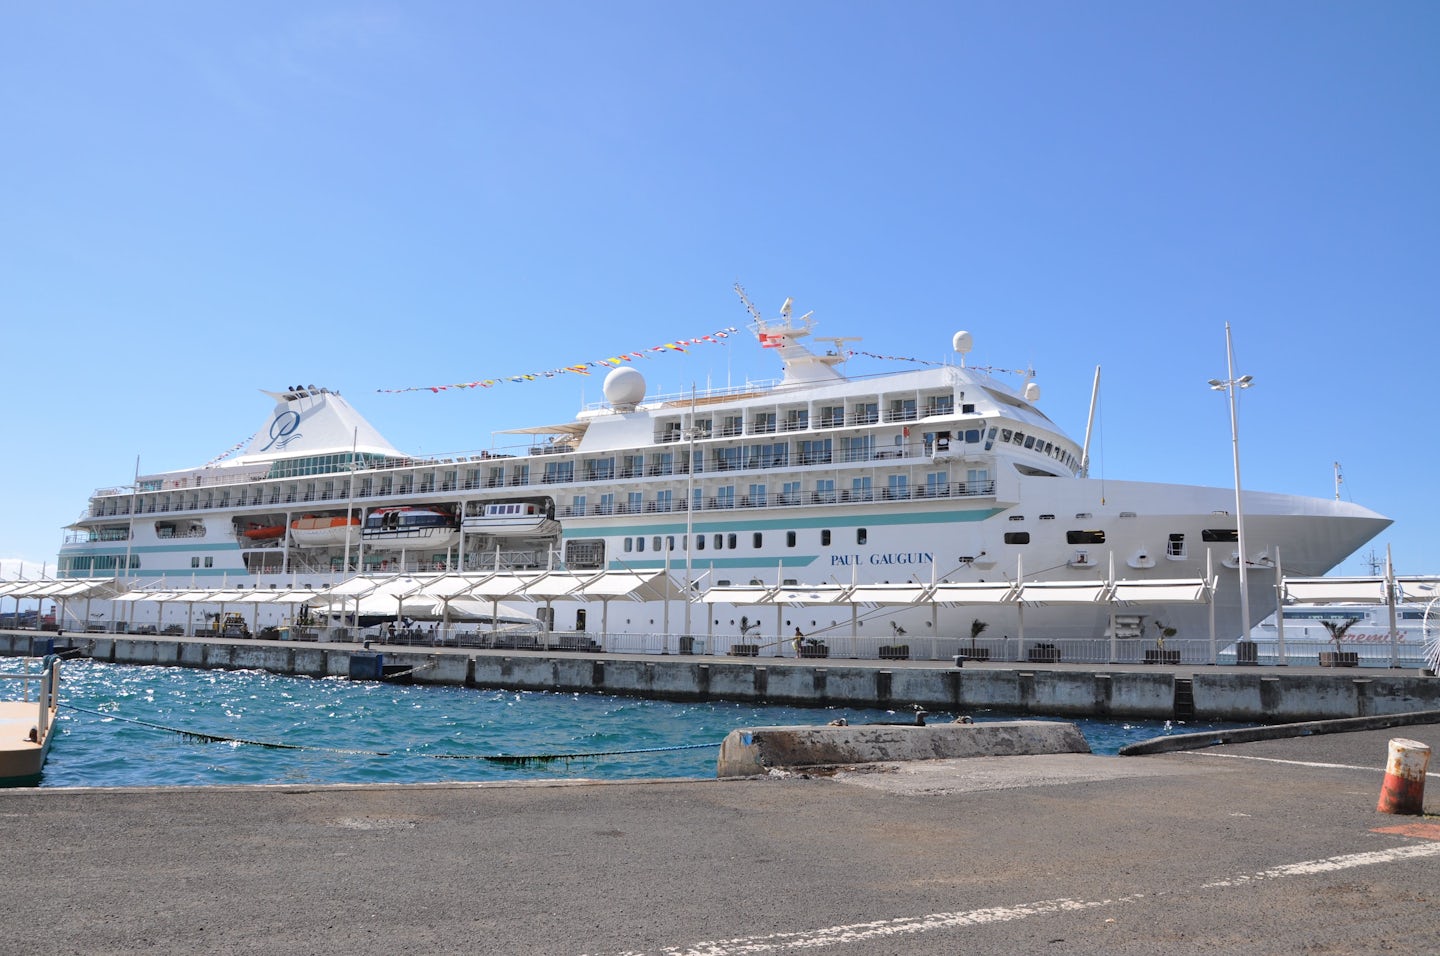 M/S Paul Gaugin docked at Papeete